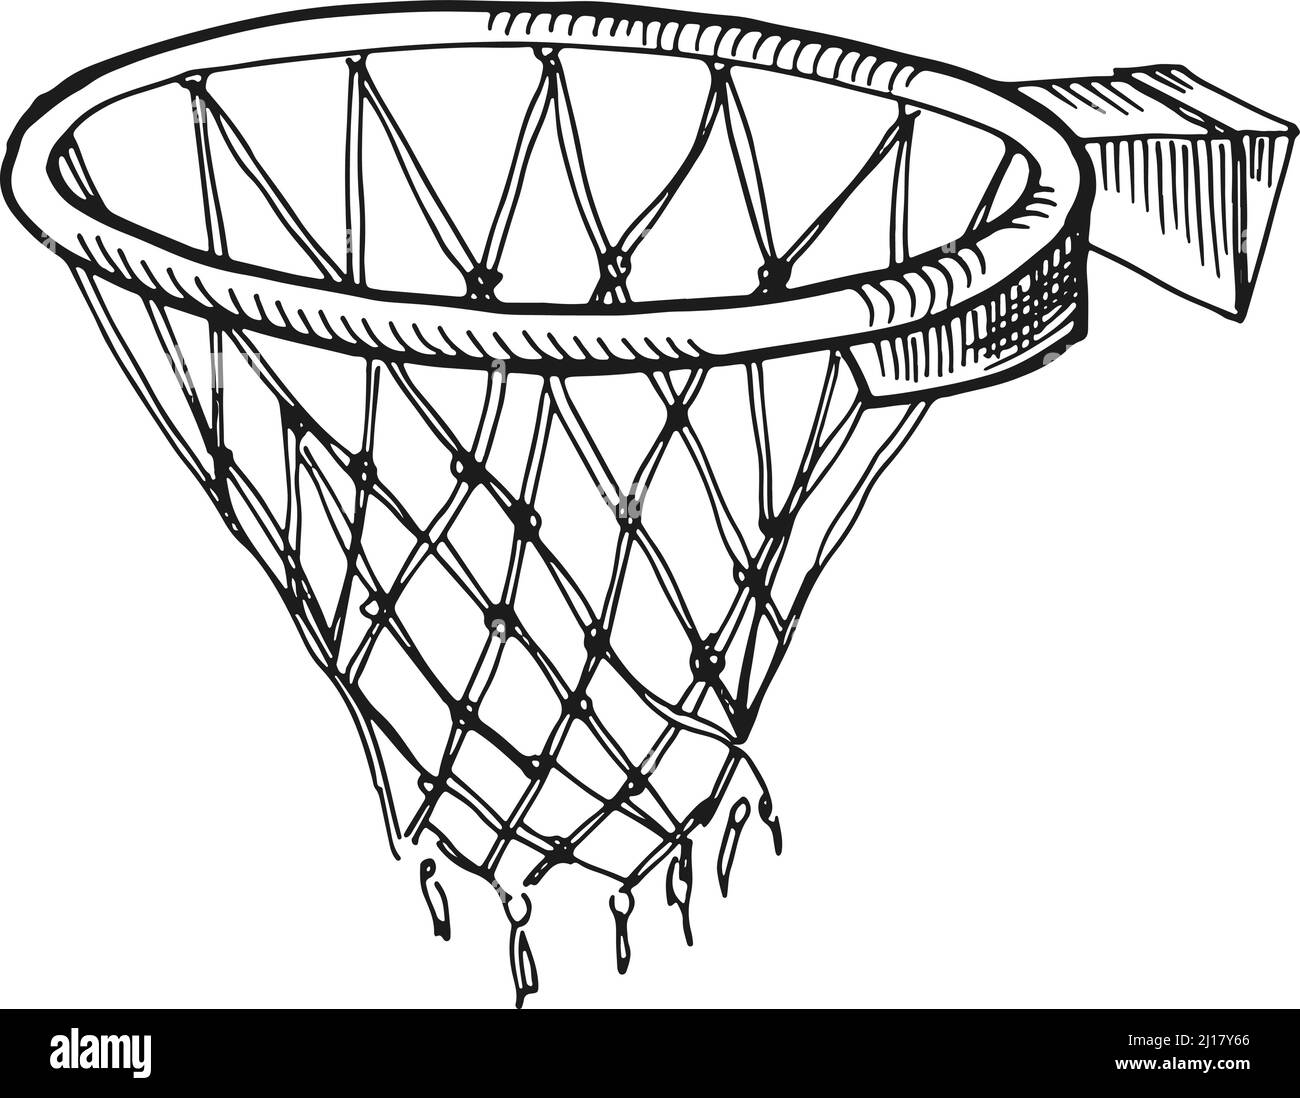 Croquis du filet de basket-ball. Symbole de panier de jeu. Panneau sport  Image Vectorielle Stock - Alamy